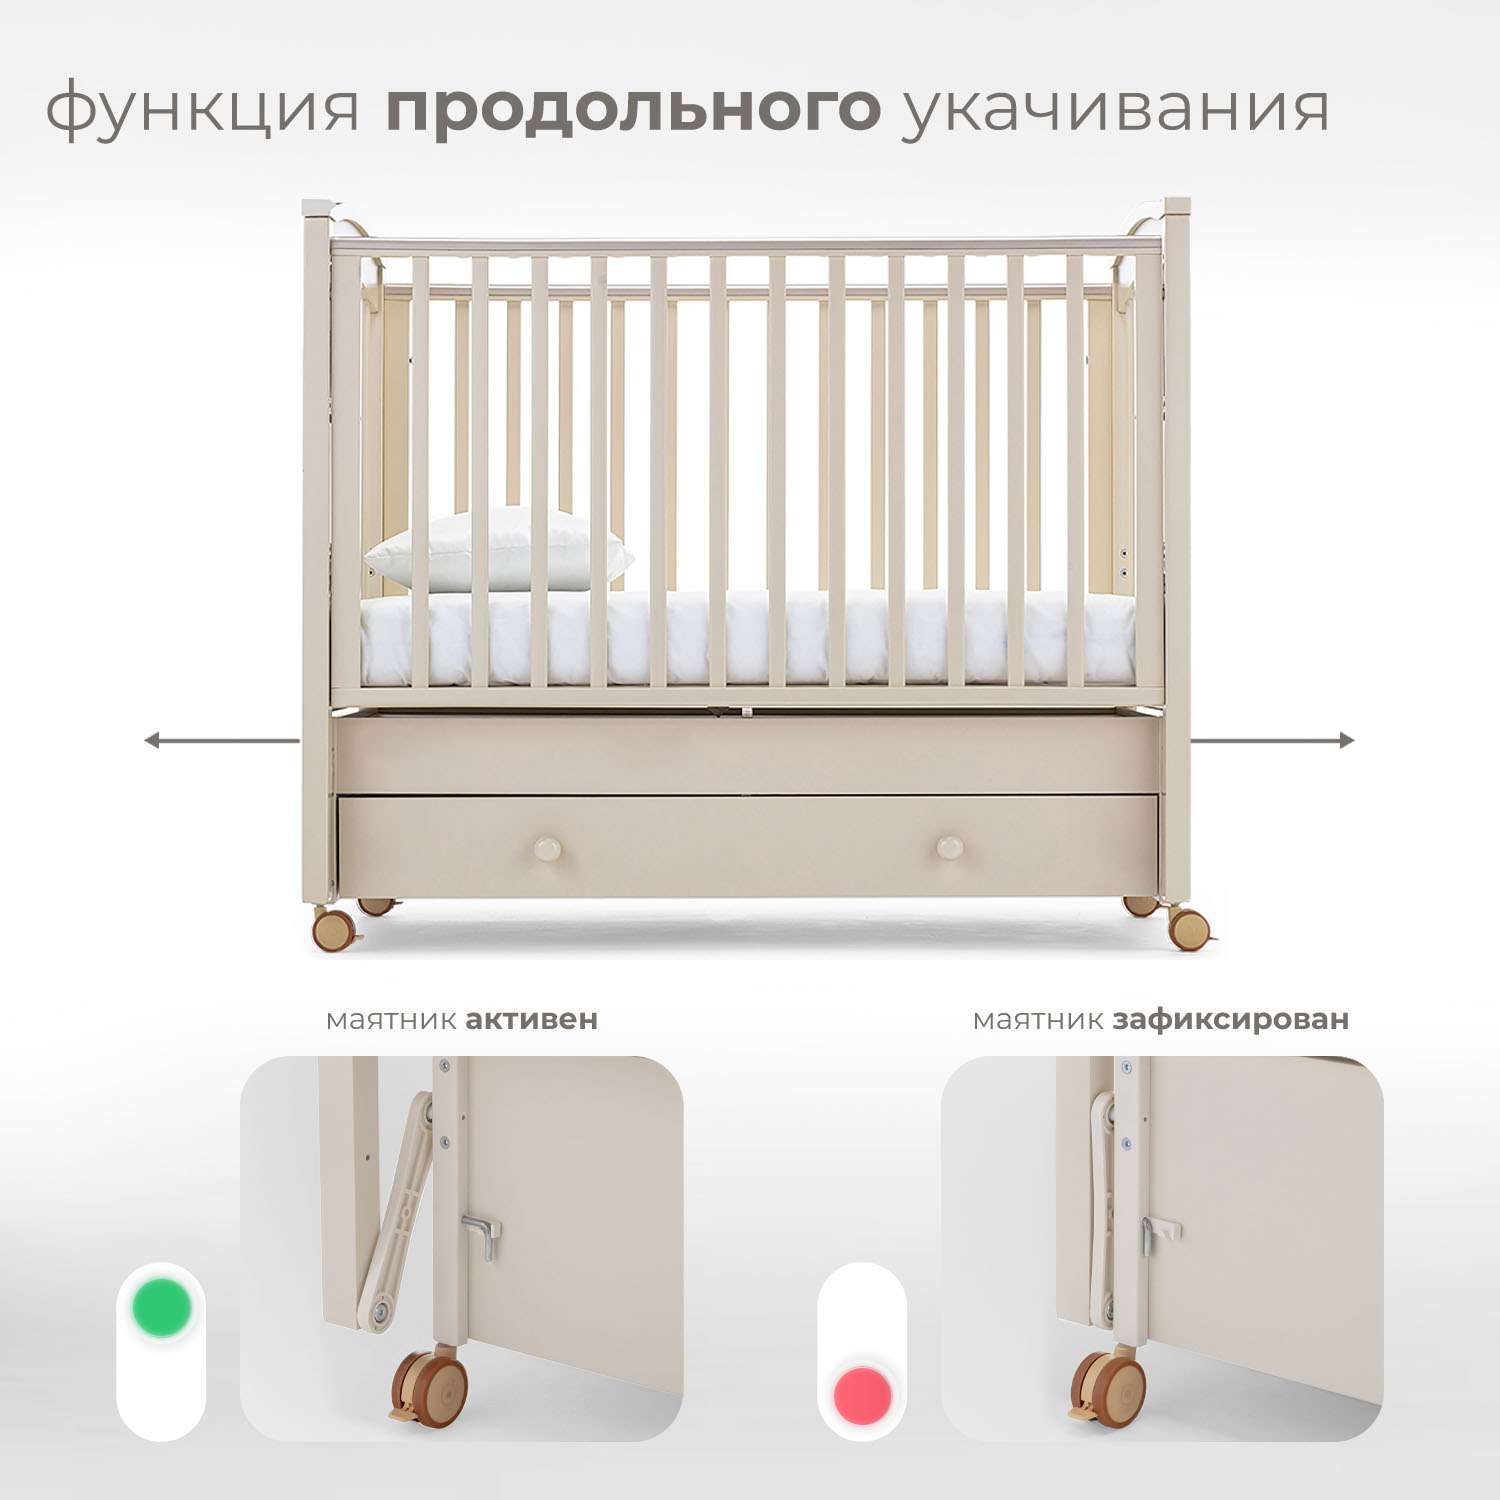 Детская кроватка Nuovita Perla Solo Swing прямоугольная, продольный маятник (слоновая кость) - фото 4